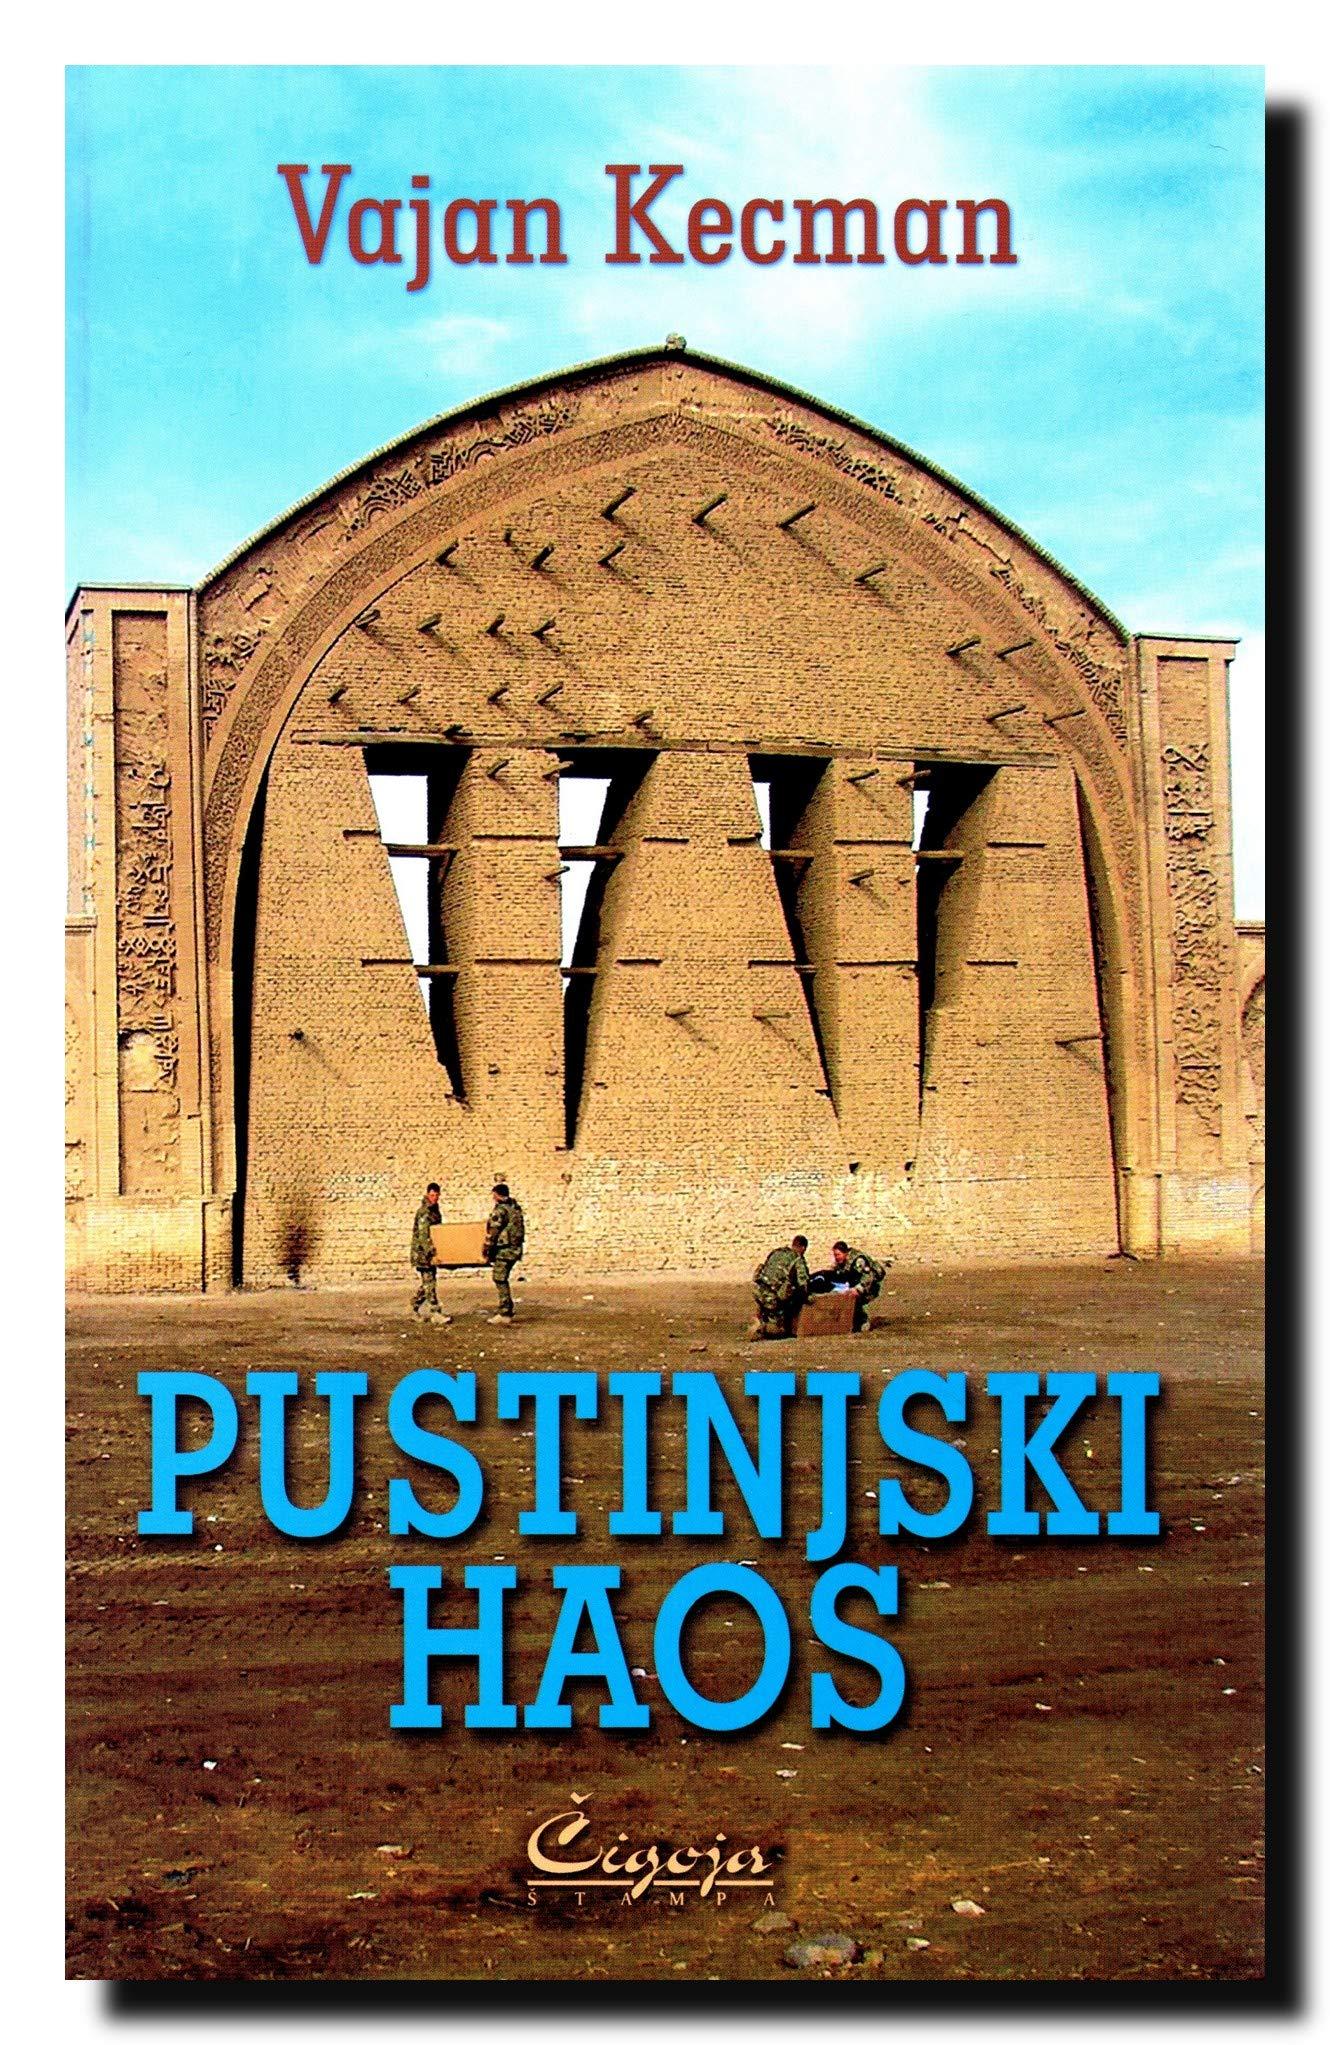 Selected image for Pustinjski haos